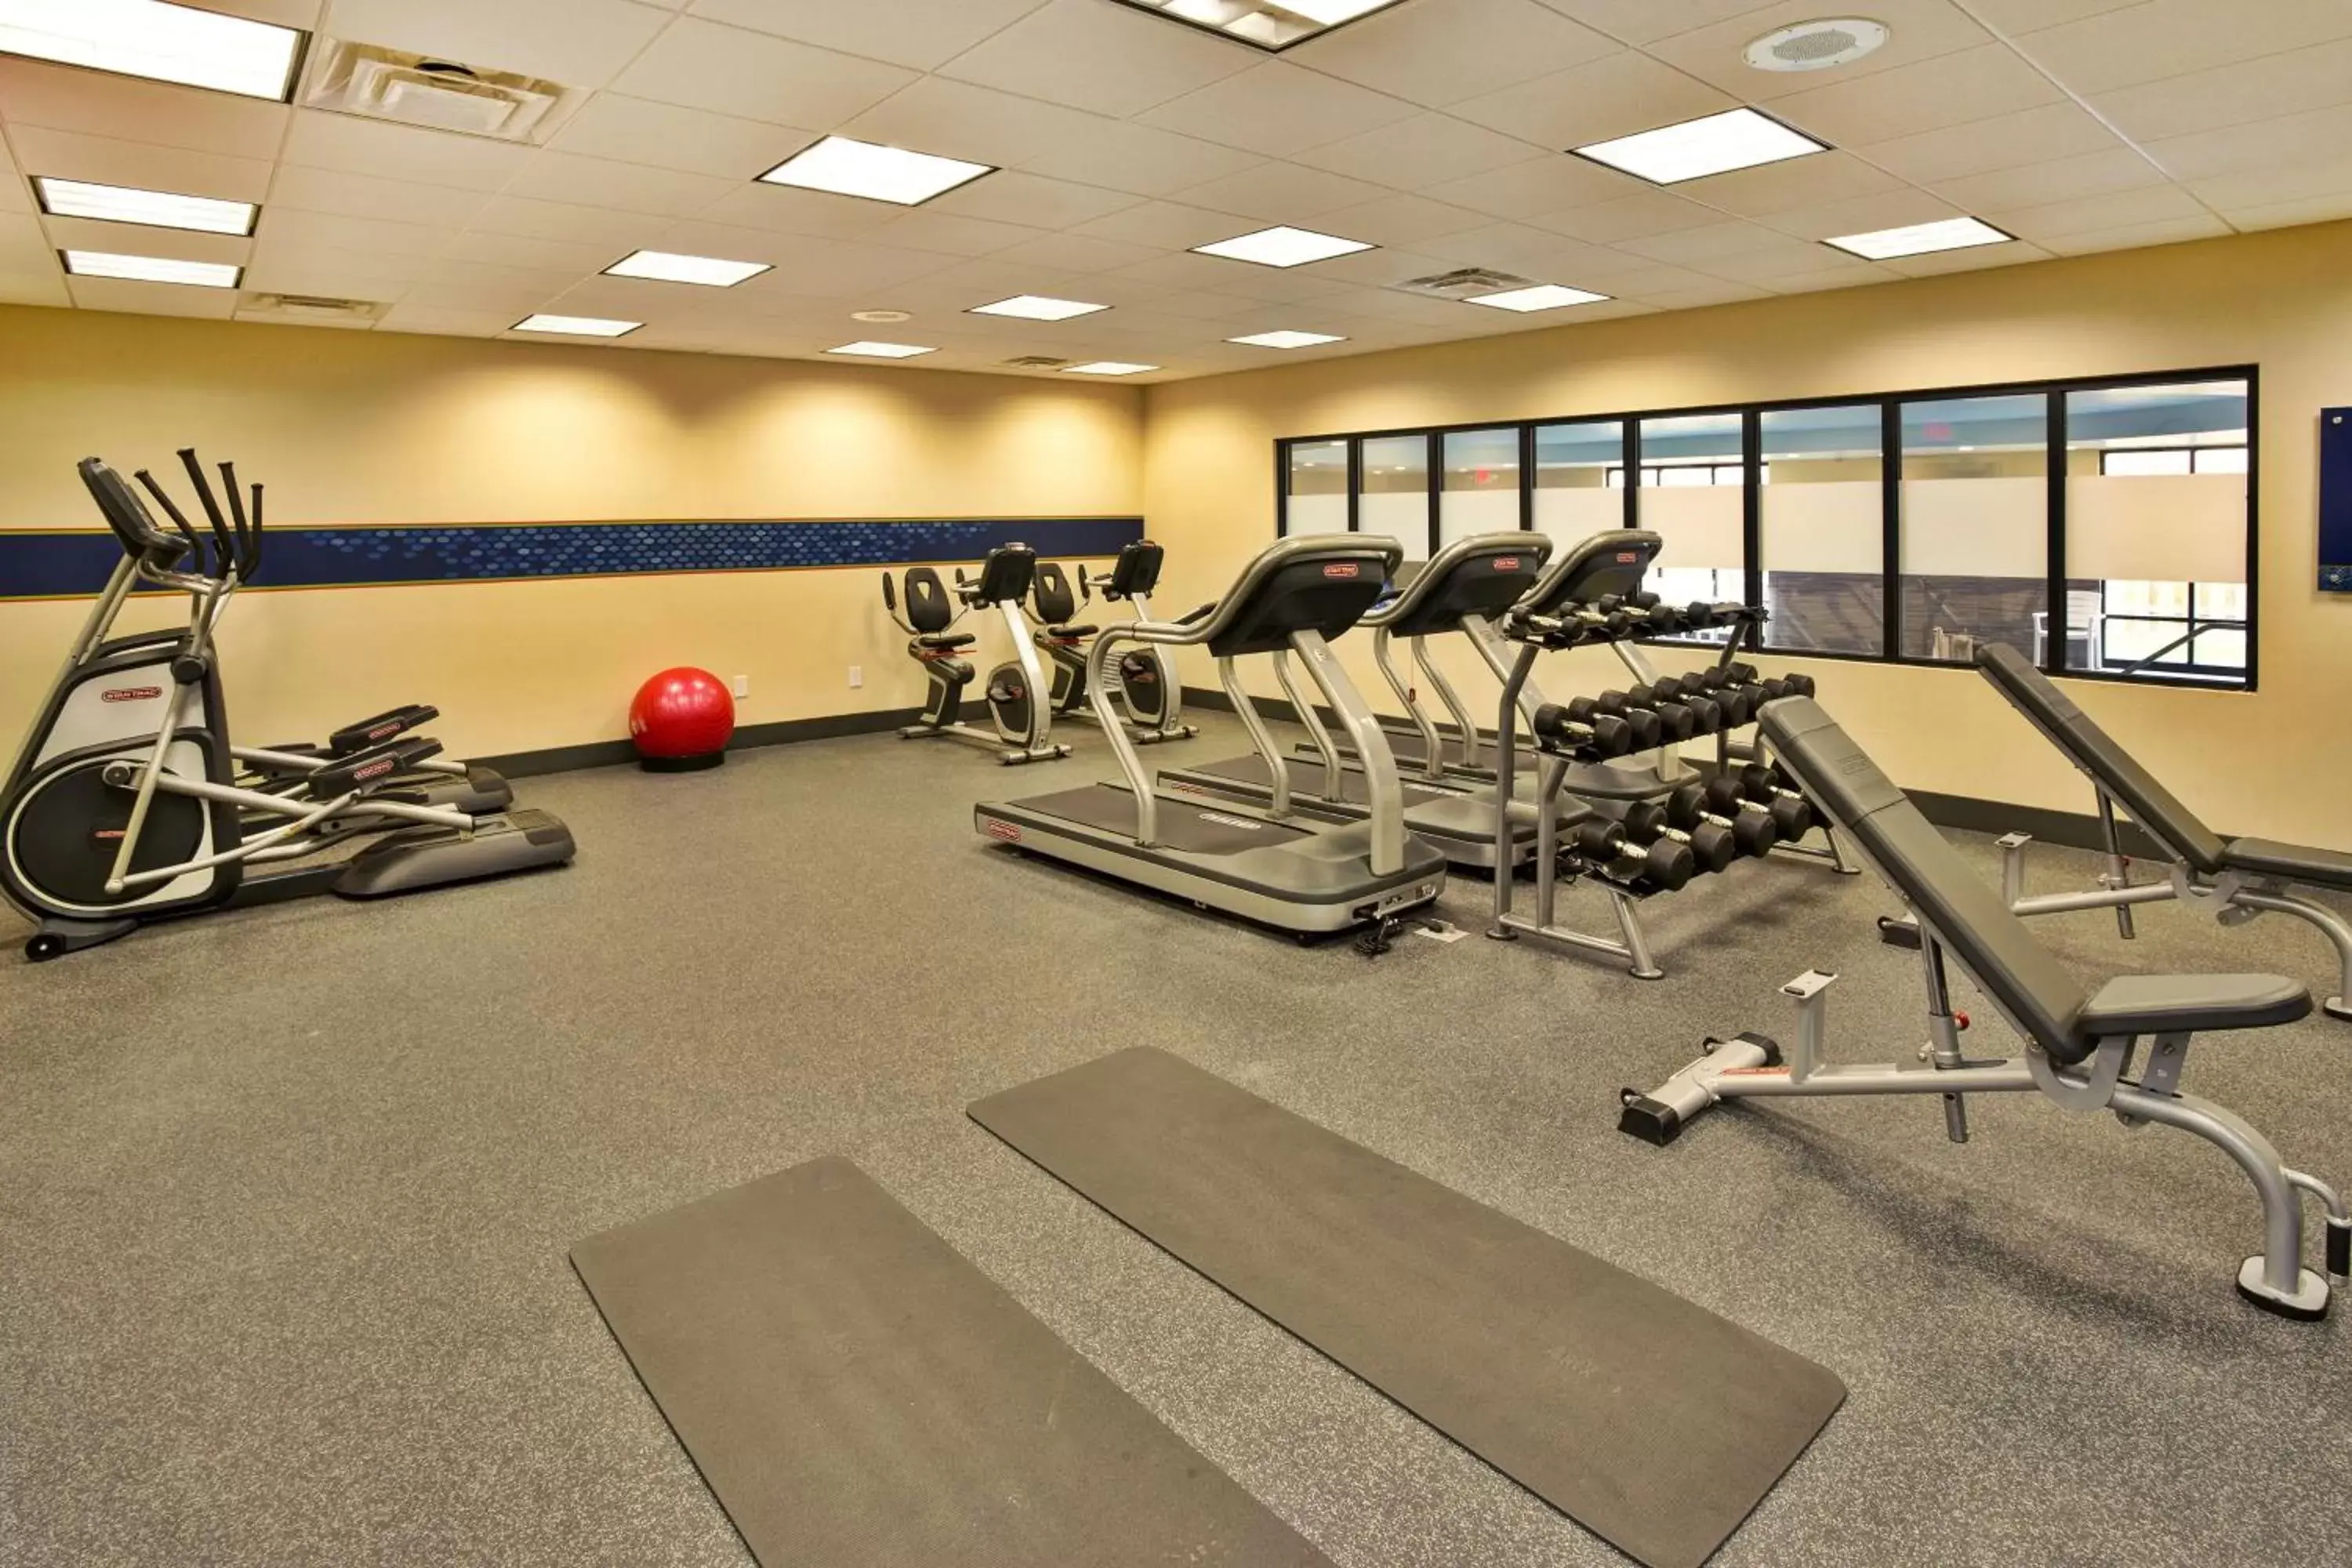 Fitness centre/facilities, Fitness Center/Facilities in Hampton Inn Niagara Falls/ Blvd